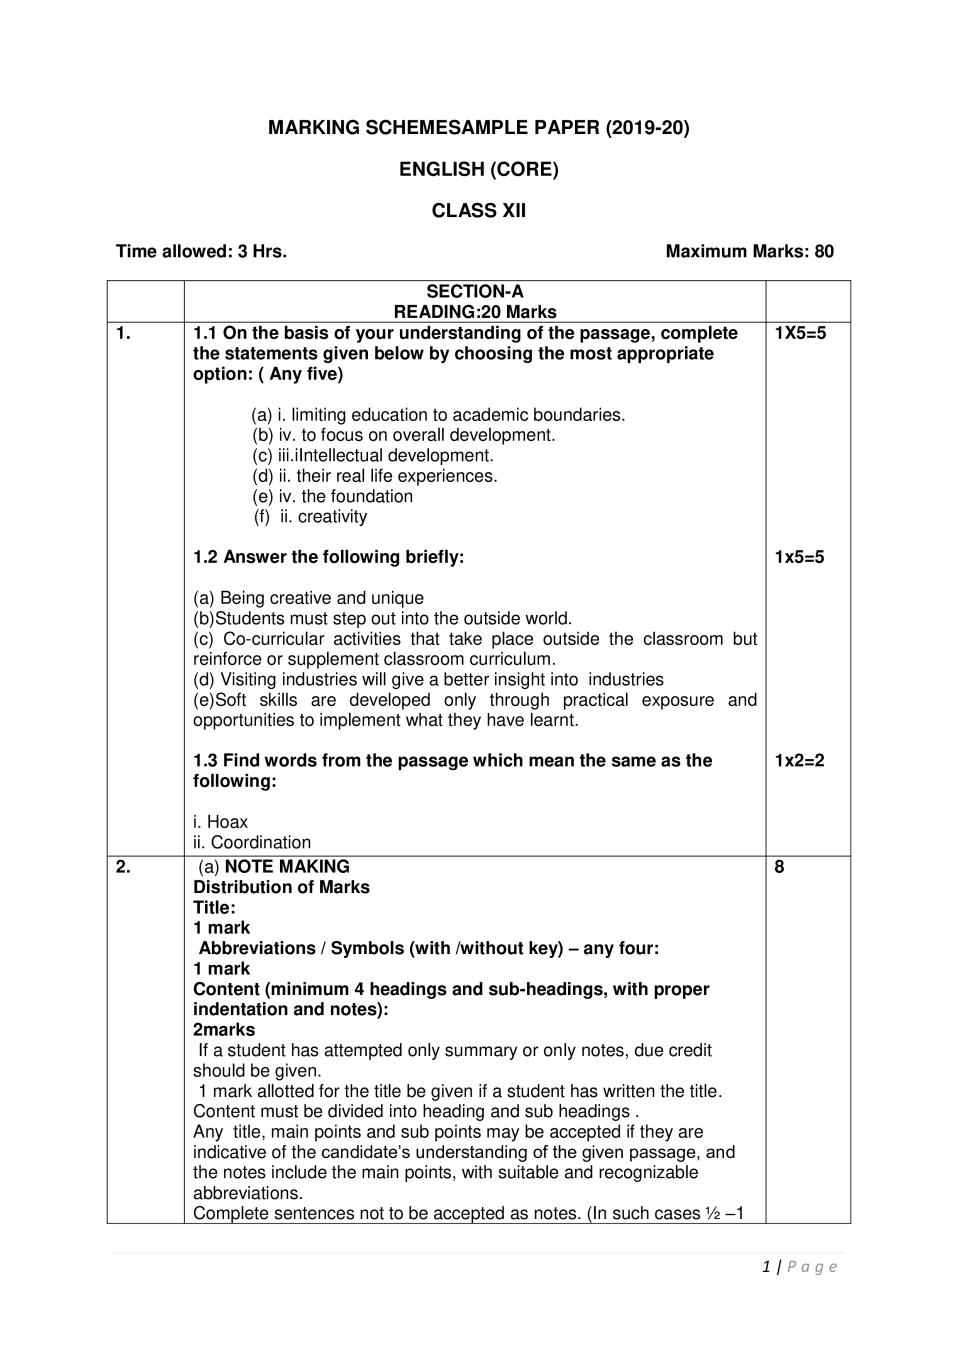 pt3 english essay marking scheme 2020